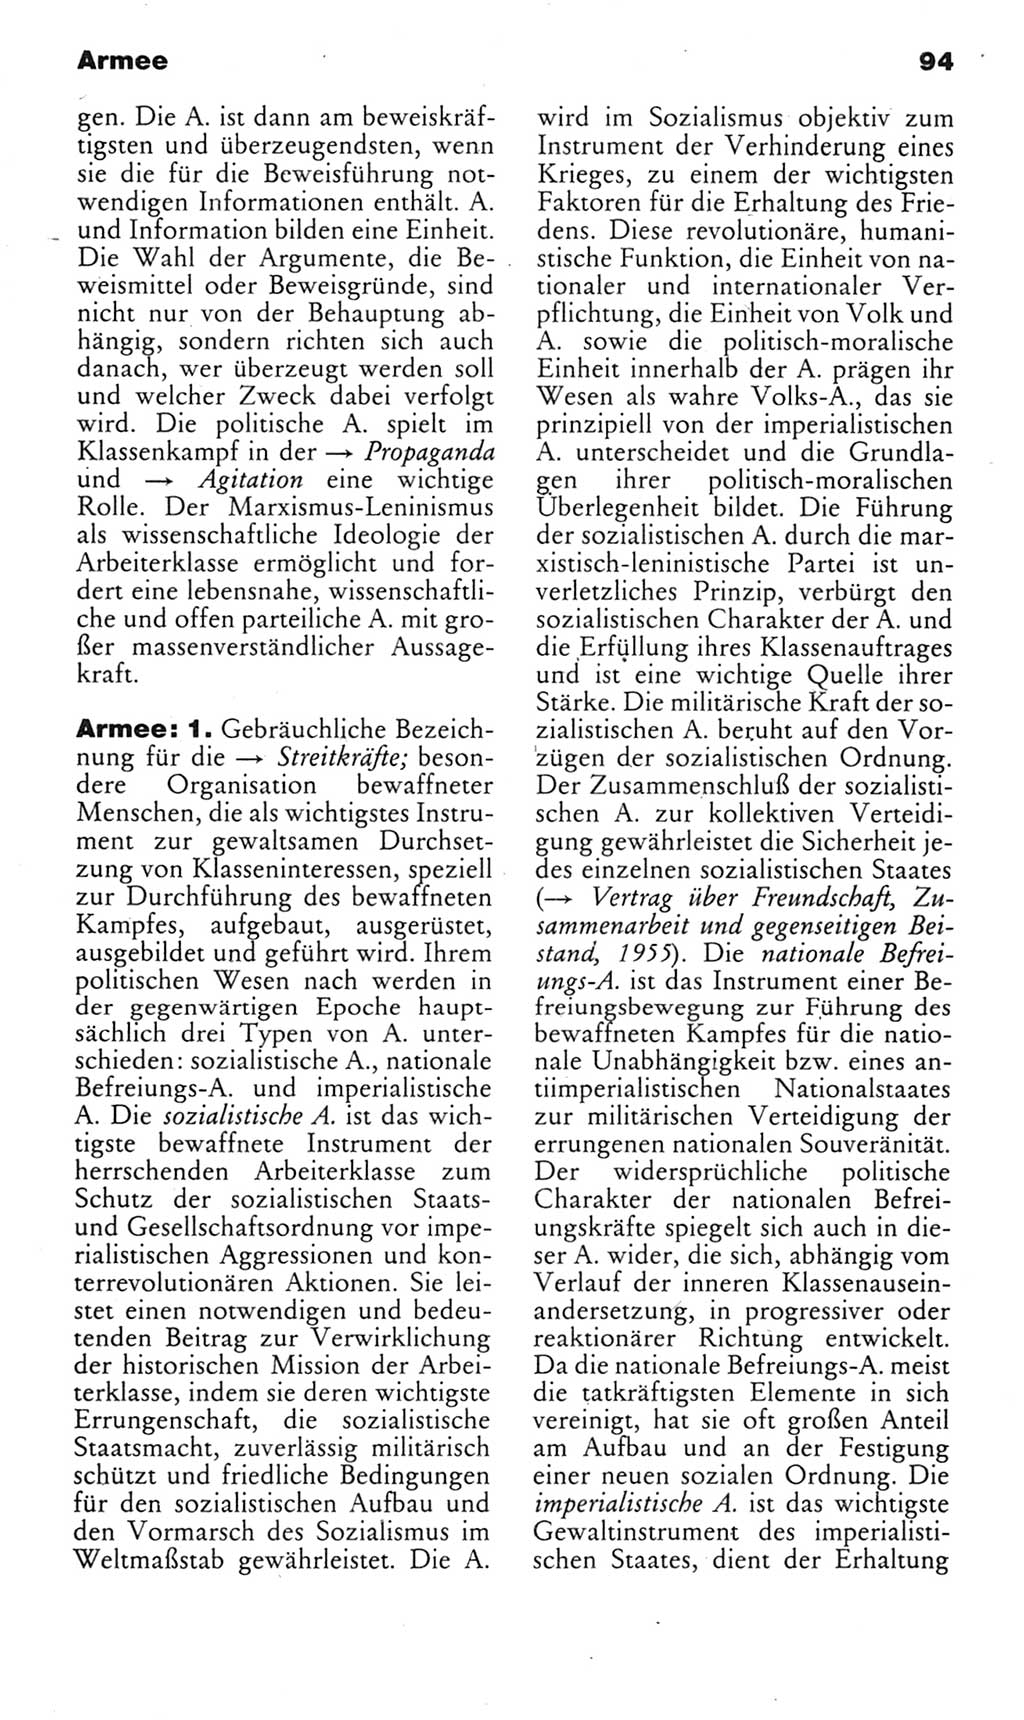 Kleines politisches Wörterbuch [Deutsche Demokratische Republik (DDR)] 1985, Seite 94 (Kl. pol. Wb. DDR 1985, S. 94)